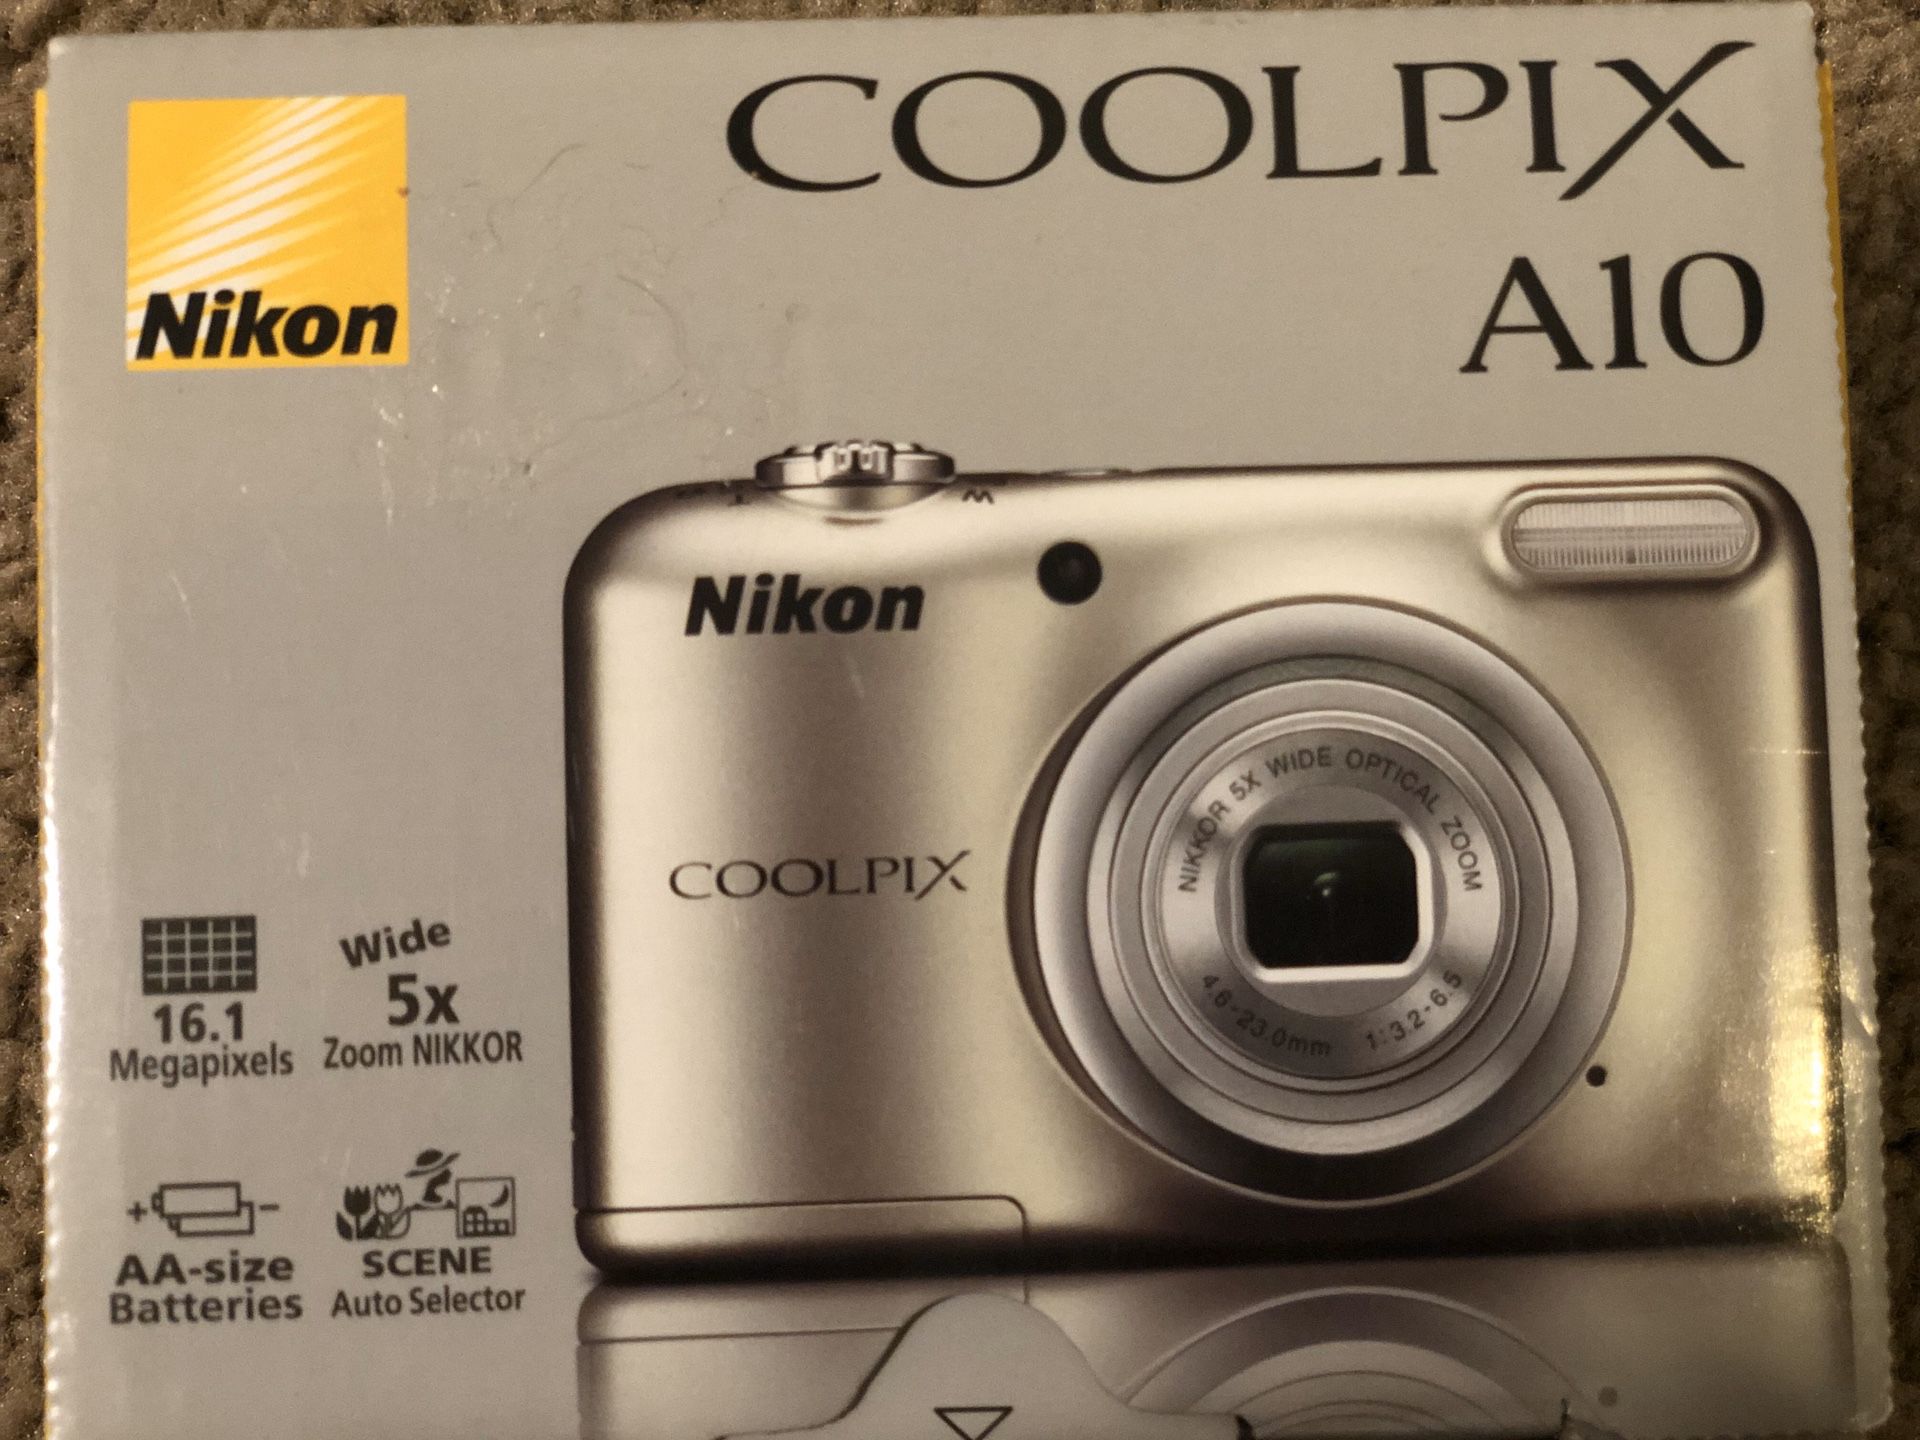 Nikon cool pix A10 Digital Camera